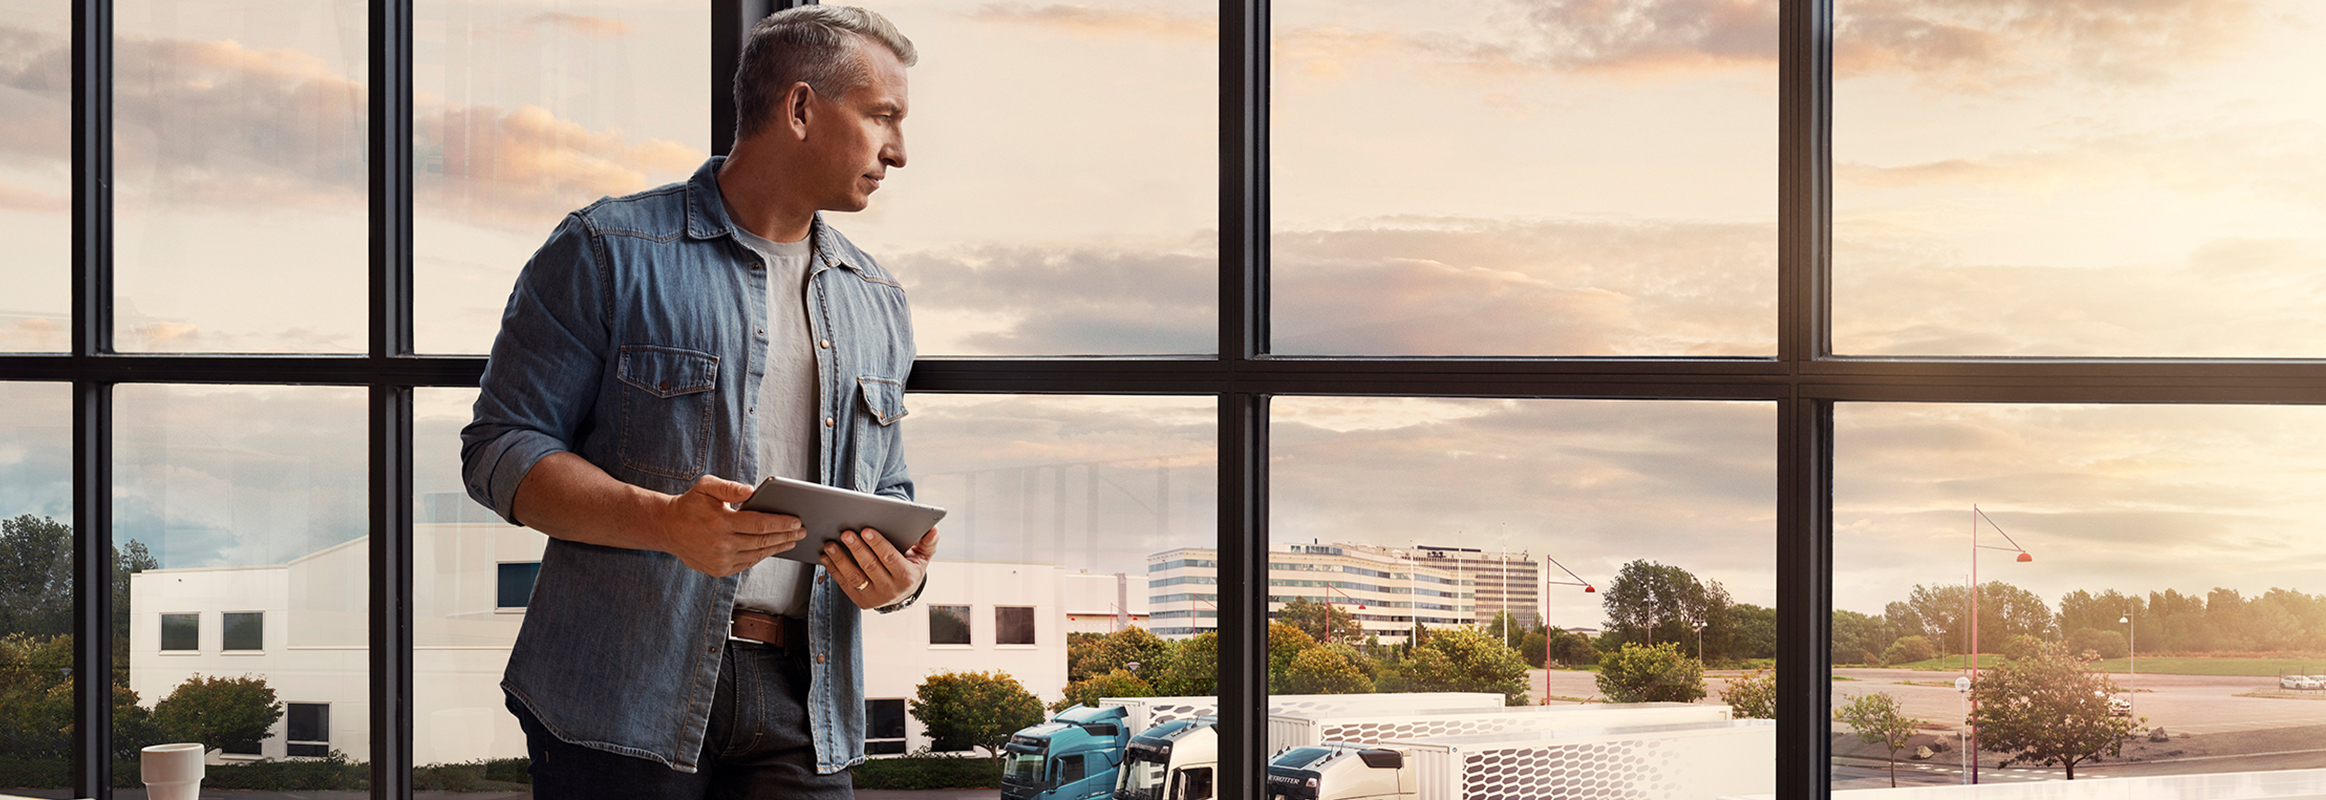 Un homme tenant une tablette se tient devant une fenêtre et regarde son parc de camions